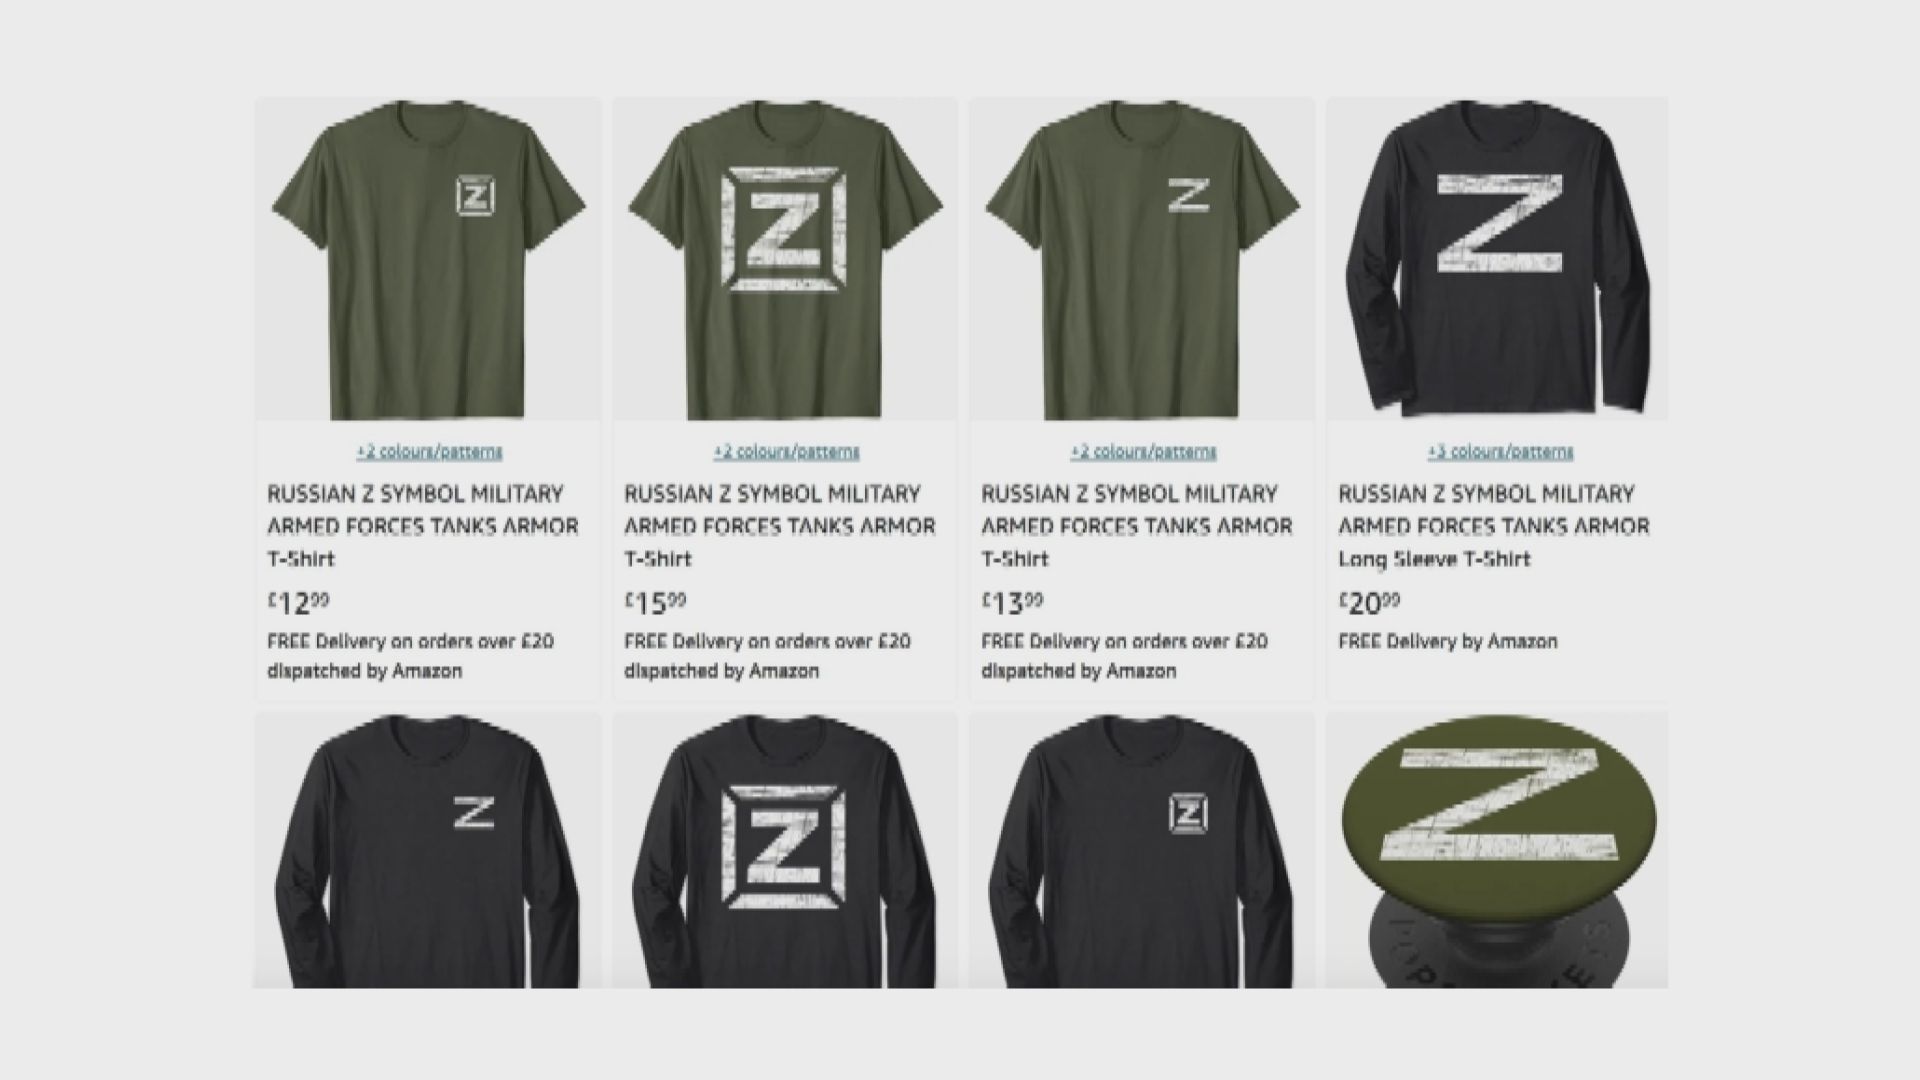 【環球薈報】英國亞馬遜把印有「Z」的T恤下架